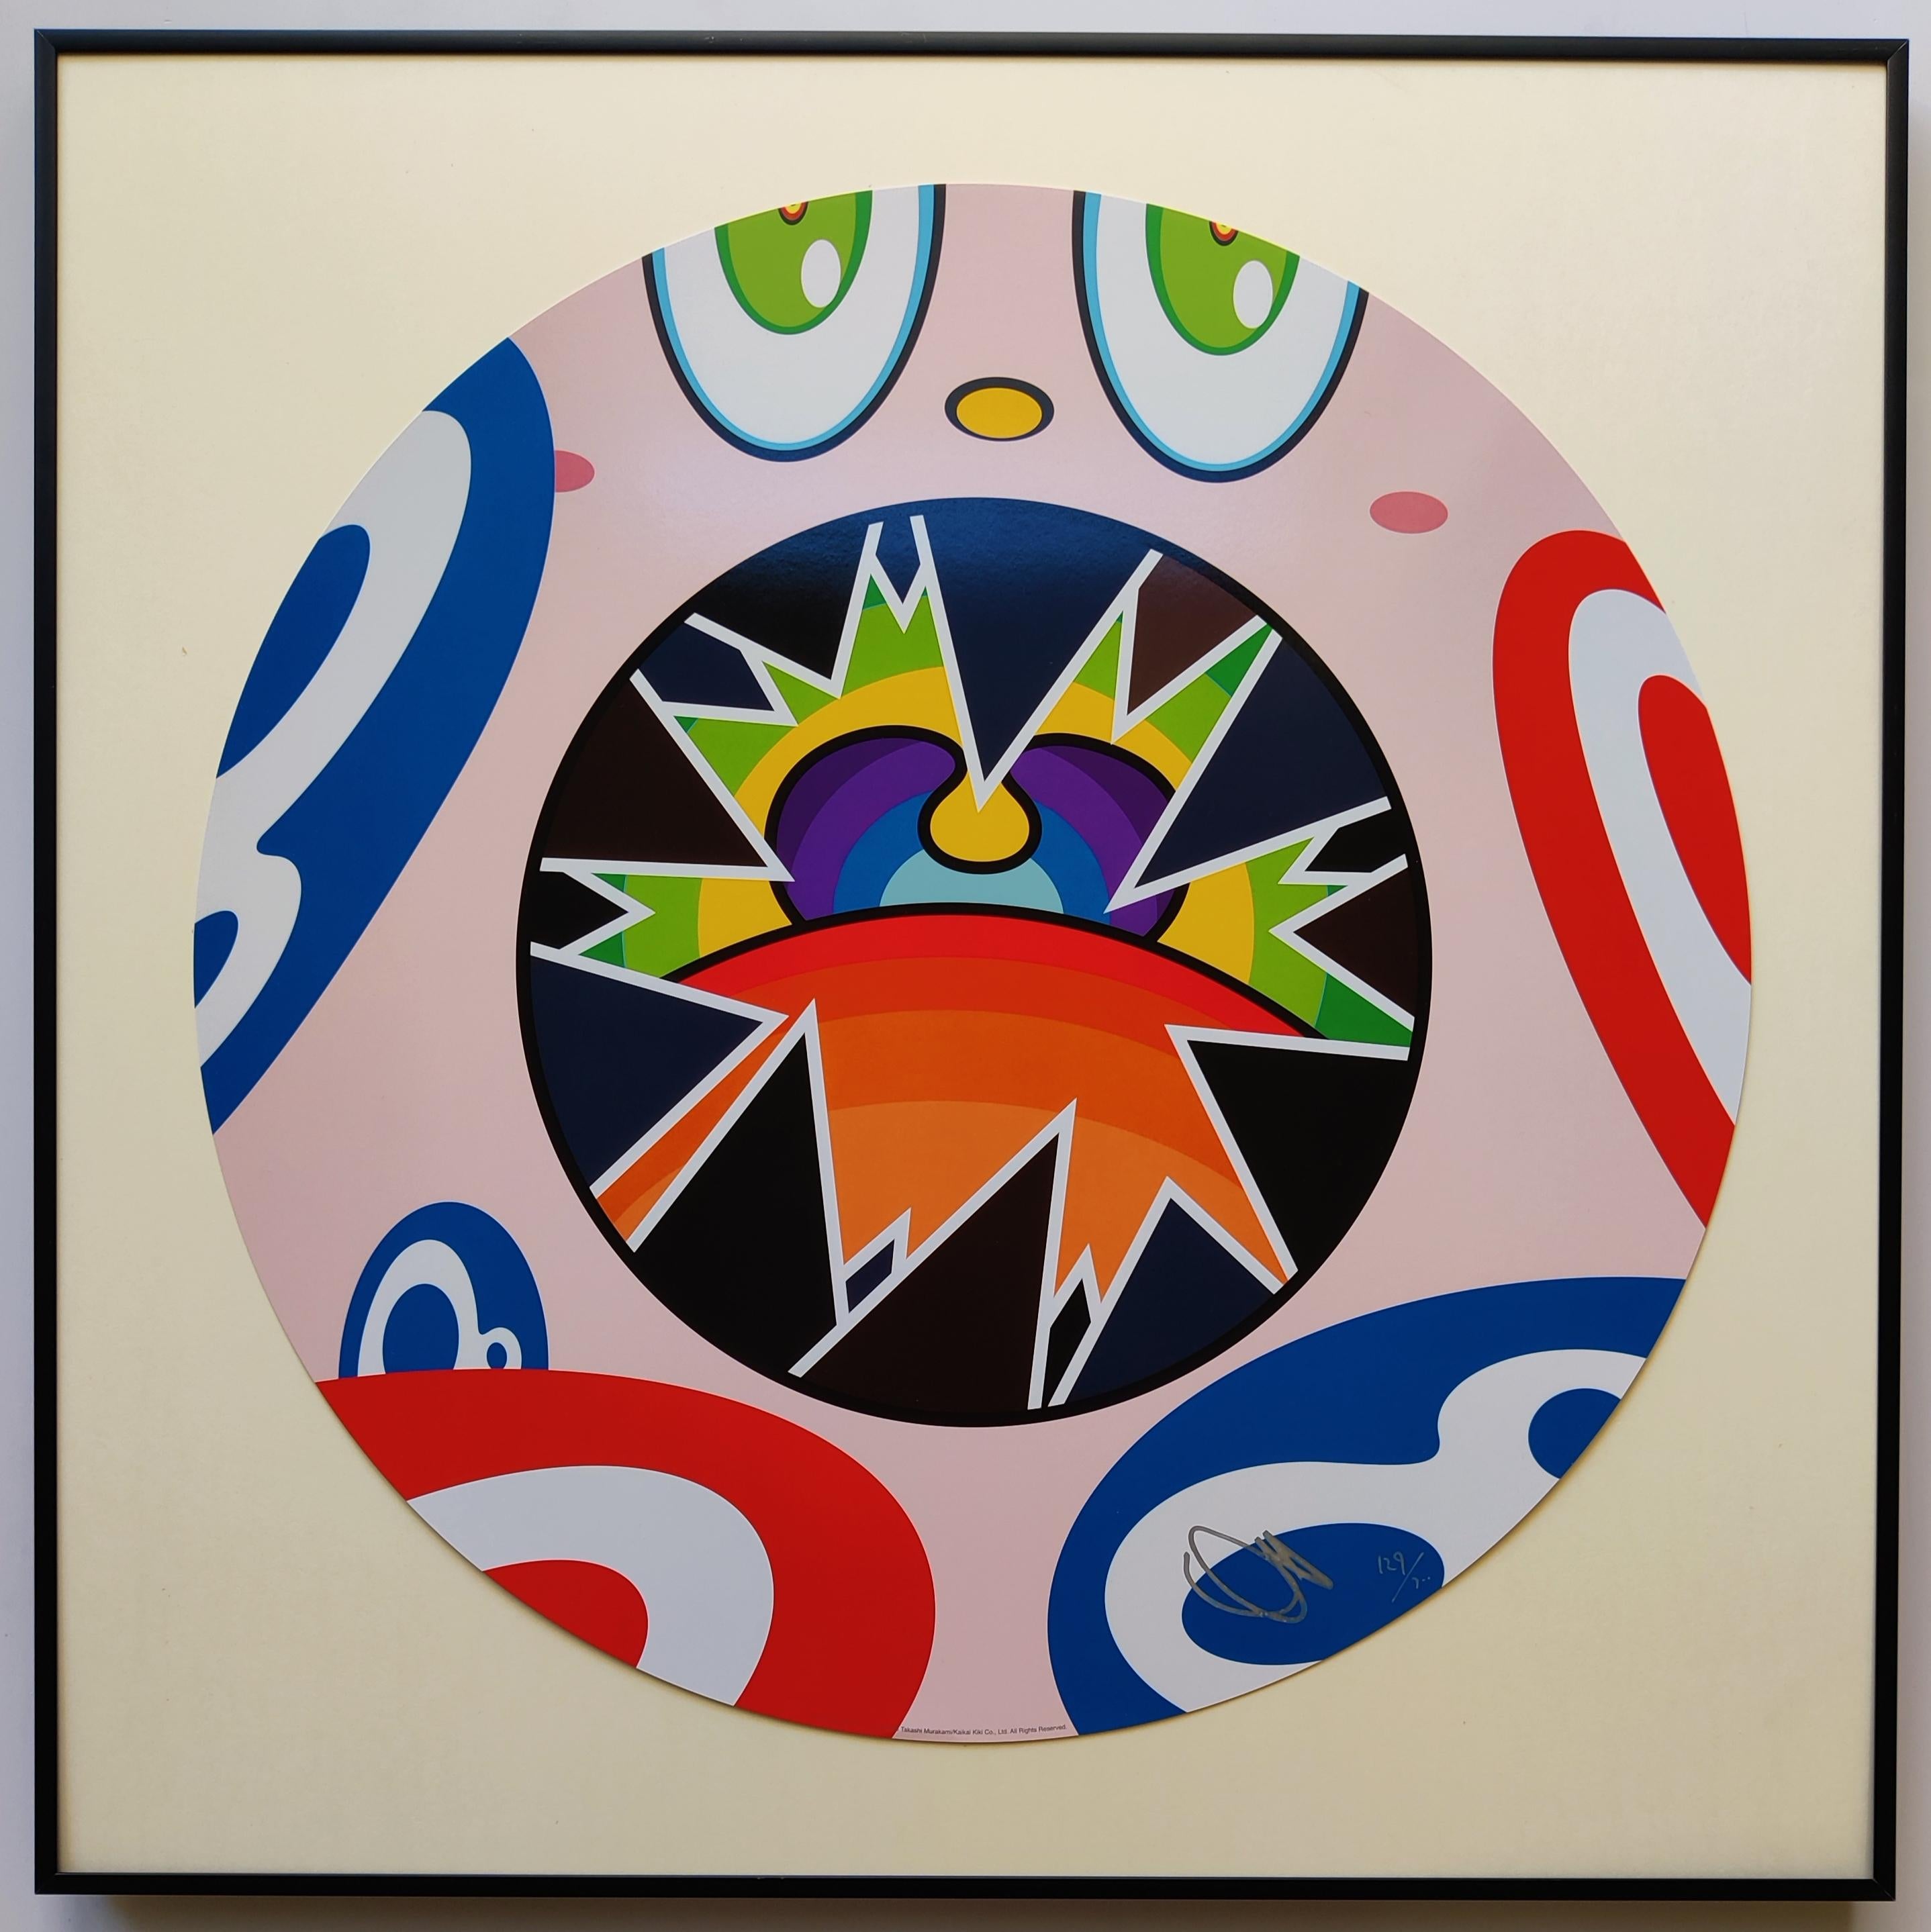 Takashi Murakami
Wir sind der Square Jocular Clan (8), 2018
Offsetlithographie
Auflage: 129/300
Durchmesser: 50 cm
Handsigniert & nummeriert von Takashi Murakami
Das Kunstwerk ist in ausgezeichnetem Zustand, einschließlich der Originalverpackung
